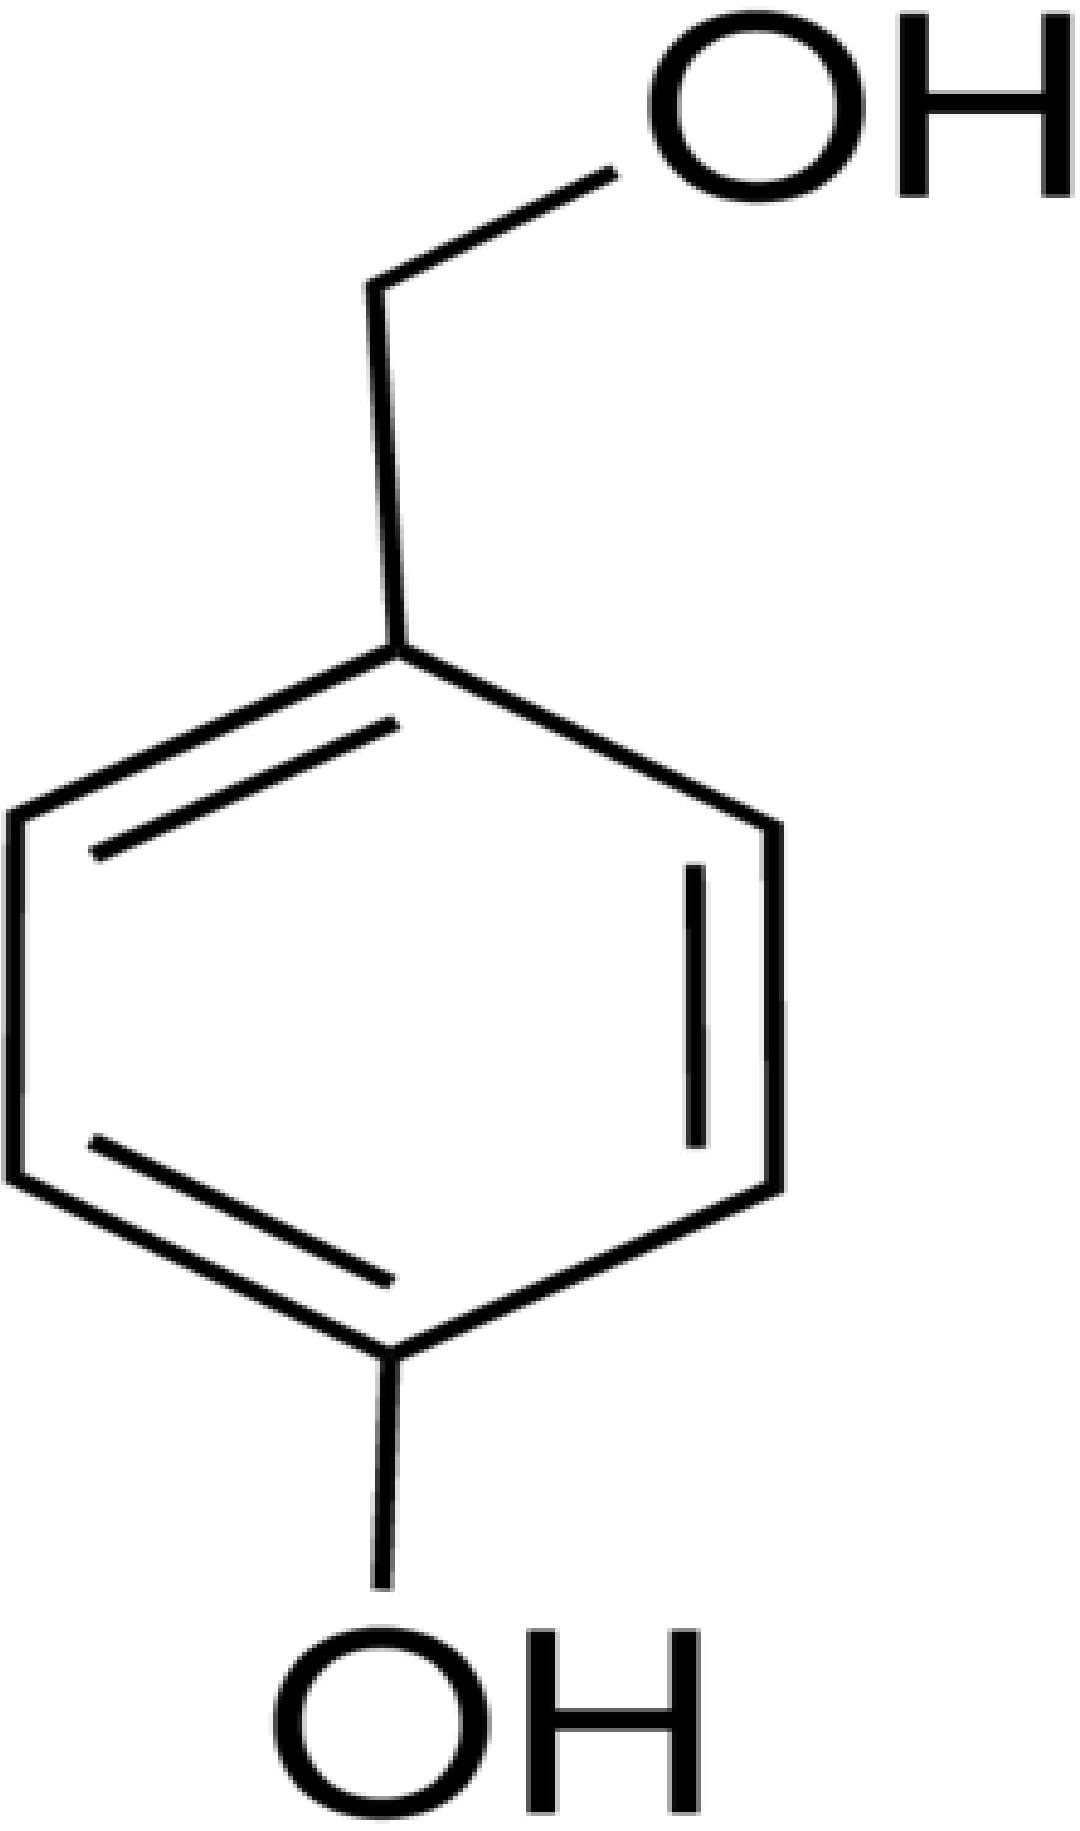 4-Hydroxy Benzyl Alcohol (Cas No. 623-05-2)